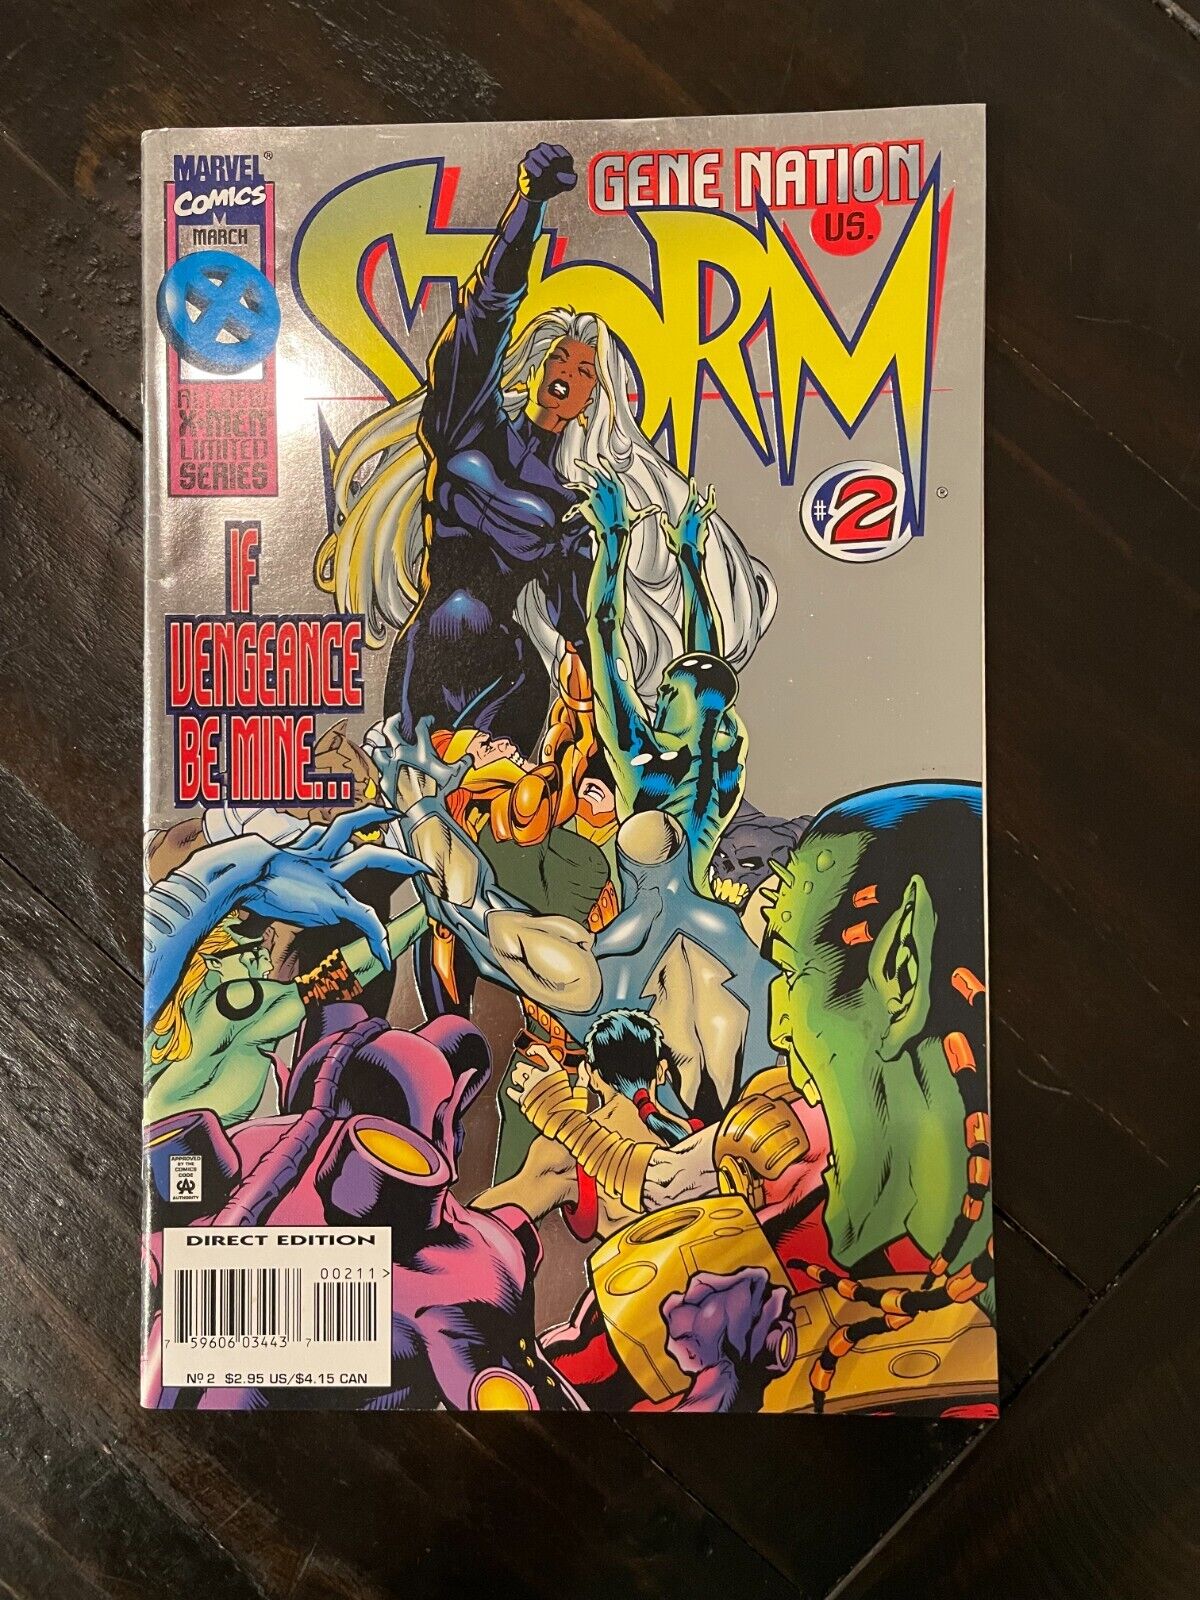 STORM  Marvel Comics Vol. 1 No. 2 March 1996, 1st Solo Series